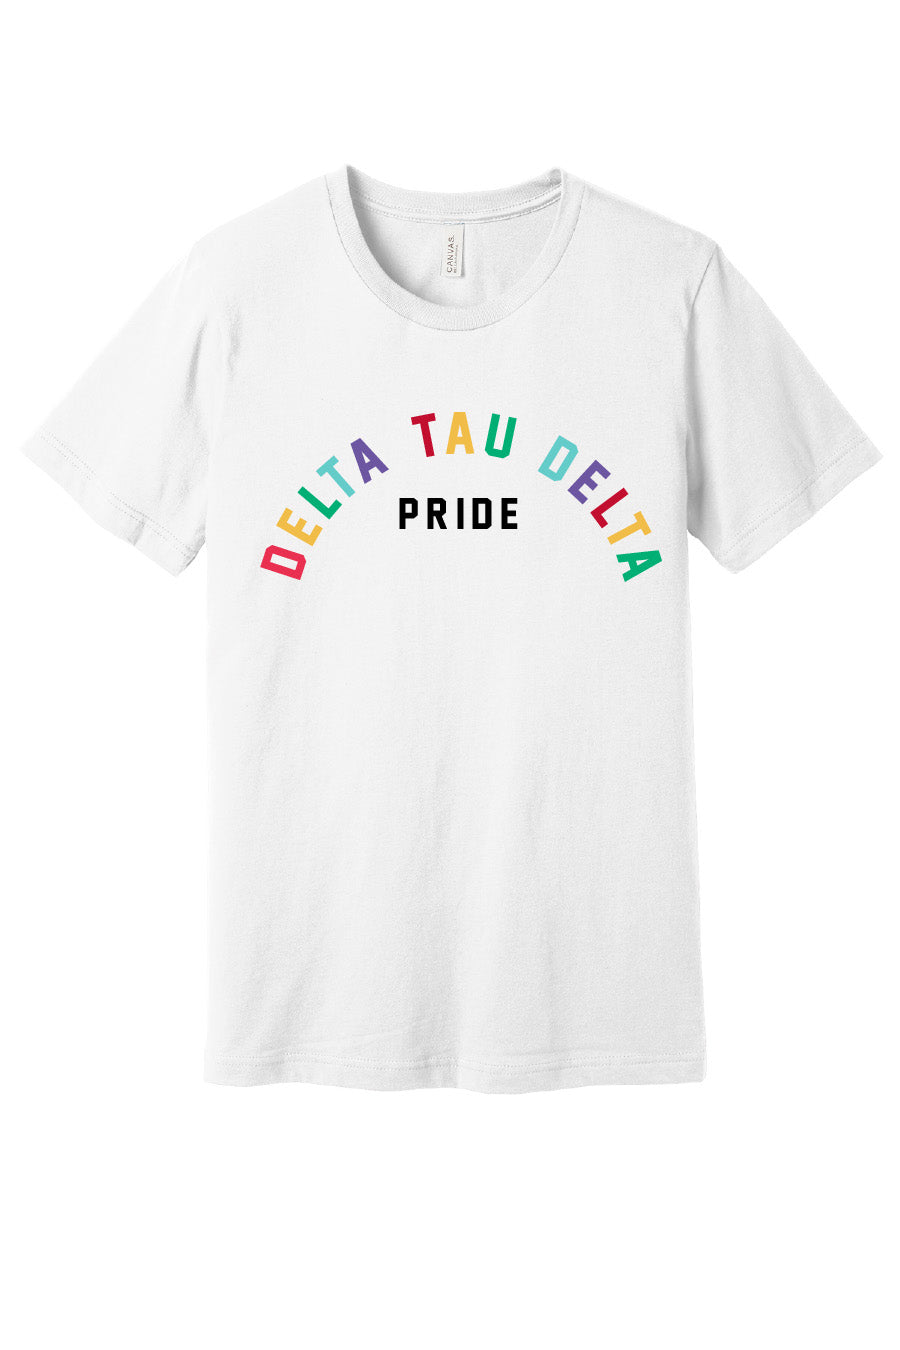 Delta Tau Delta Pride Tee